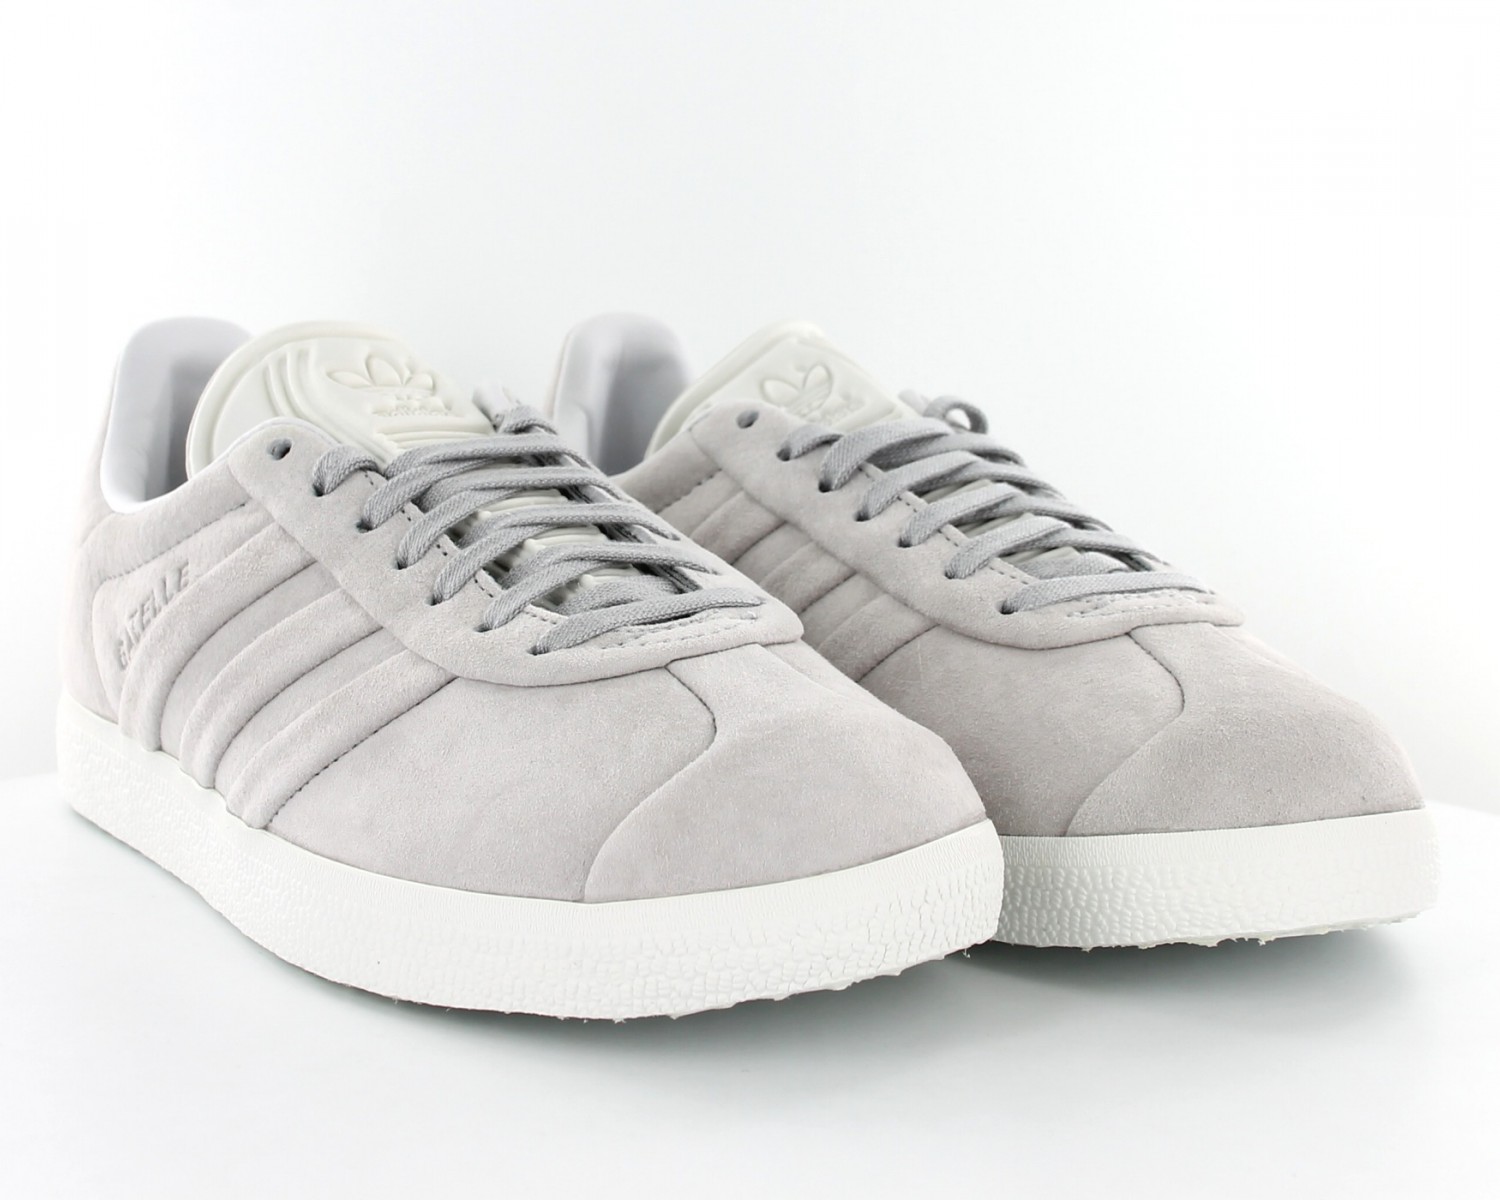 Adidas Gazelle stitch and turn Gris gris blanc BB6709